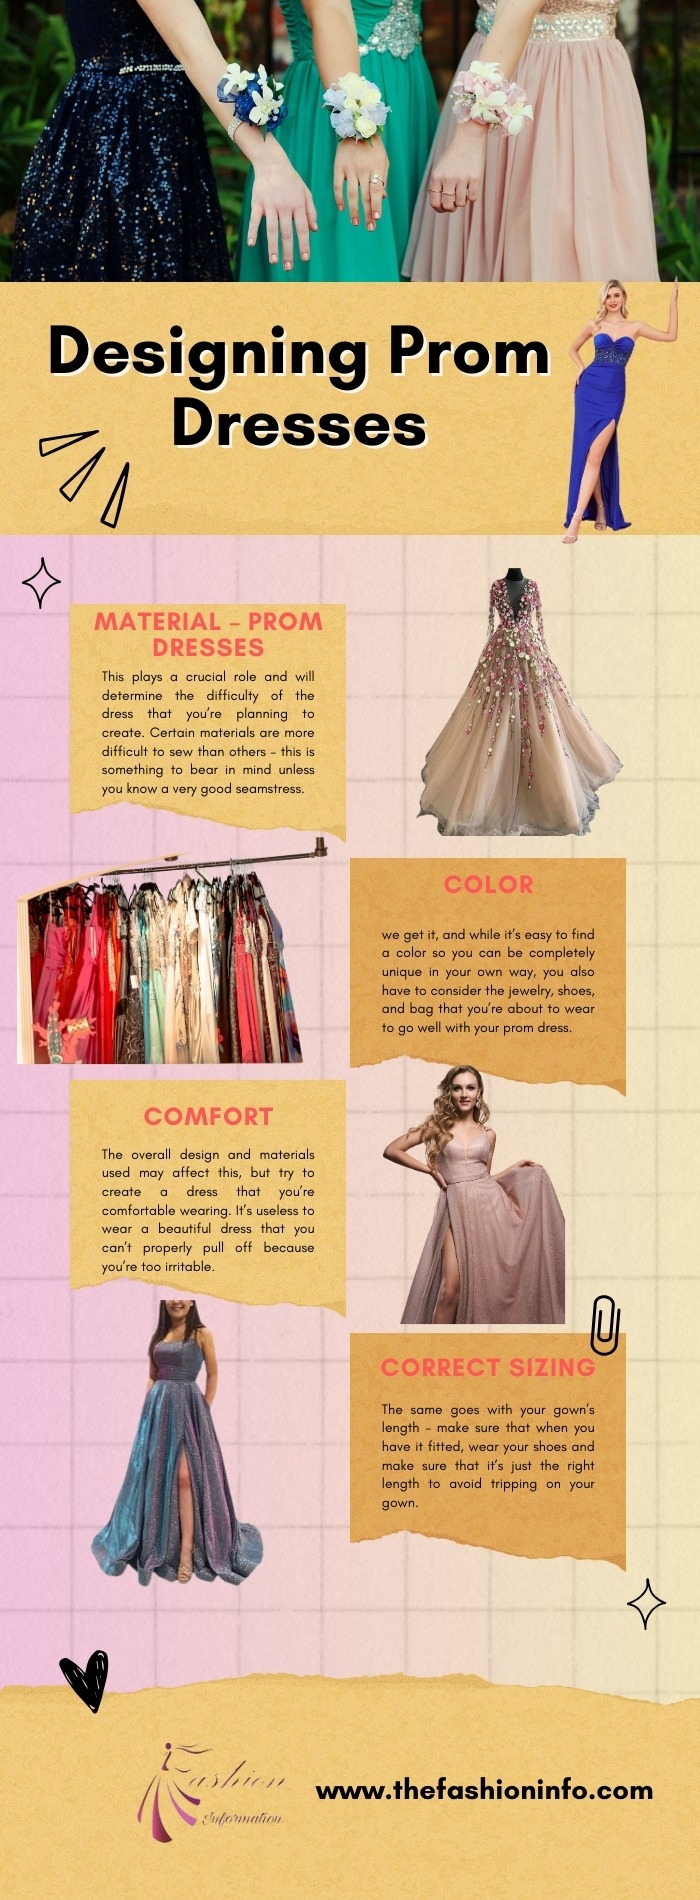 Designing Prom Dresses